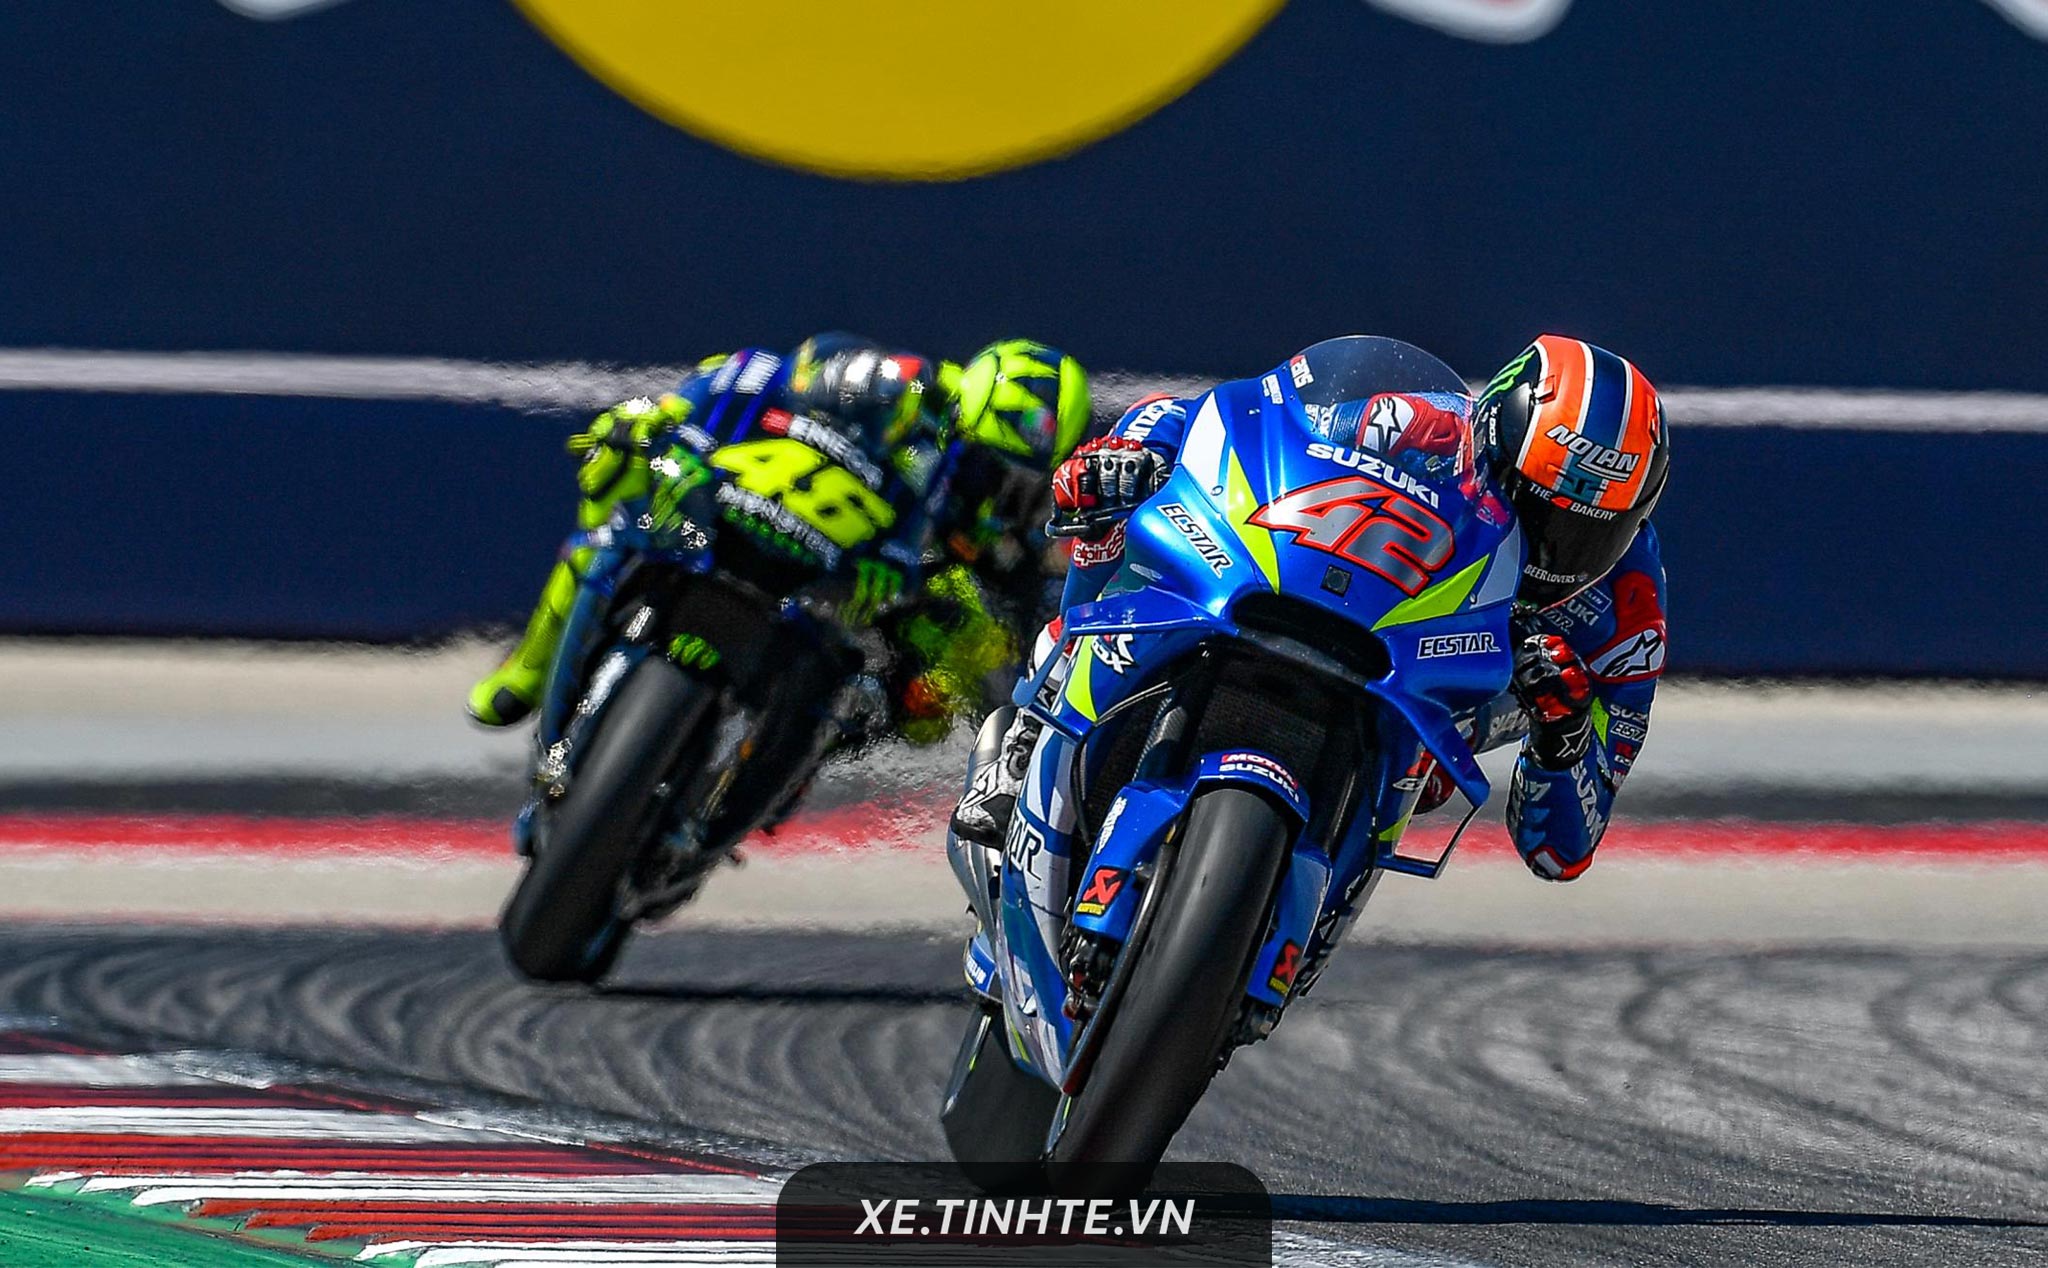 #MotoGP19 - Rins của Suzuki về nhất khi Marquez tự té, Dovi giành ngôi đầu BXH